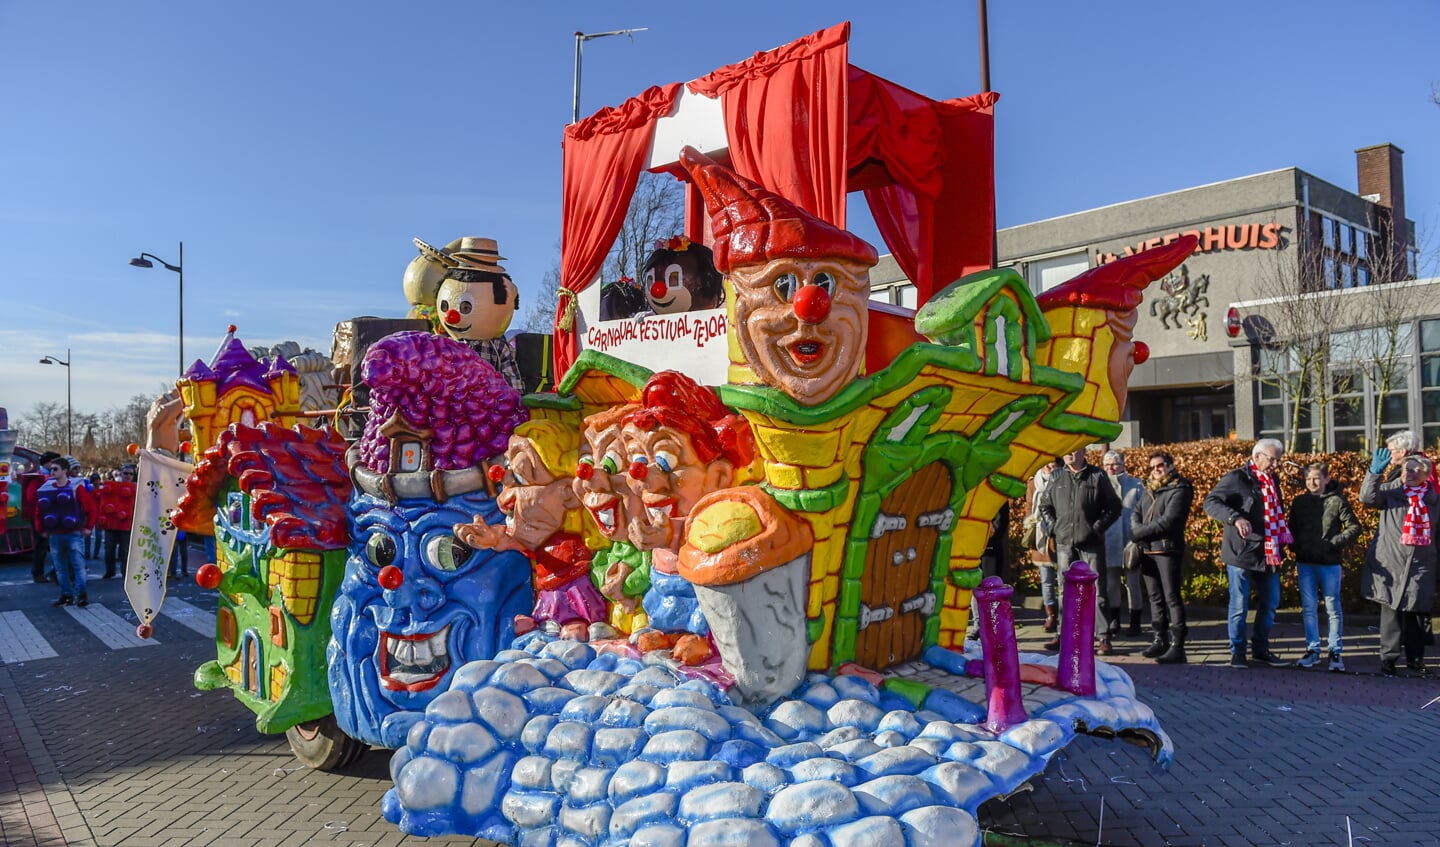 Oud Gastel - 10-02-2018 - Foto: Peter Braakmann - Voor de 58ste keer werd de Carnavals optocht Vasteelaovedzottelaand gehouden.